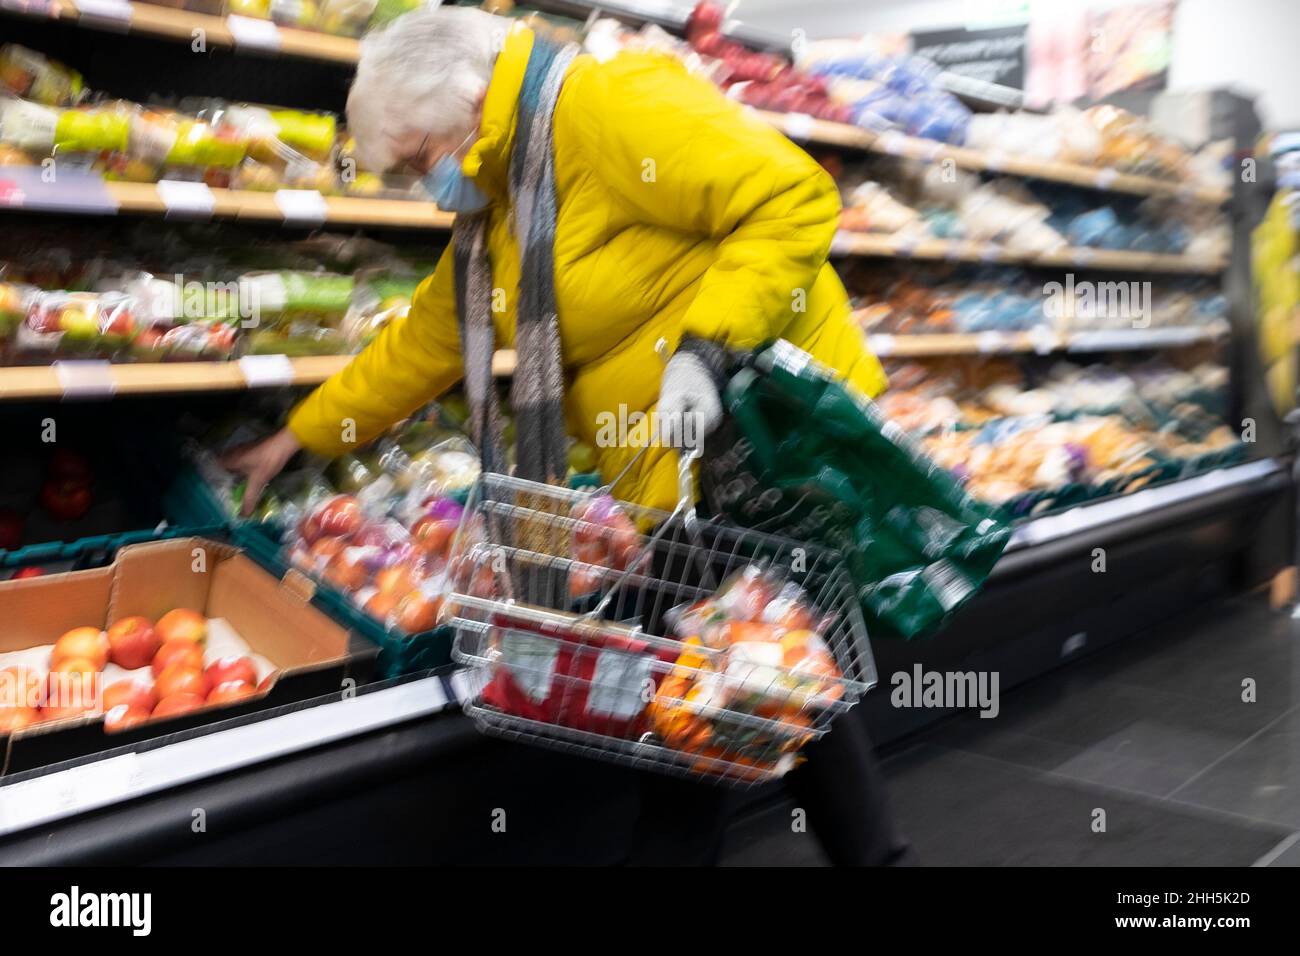 Personne âgée avec panier plié par des étagères pour faire du shopping dans l'allée du supermarché M&S Marks and Spencer janvier 2022 pays de Galles Royaume-Uni KATHY DEWITT Banque D'Images